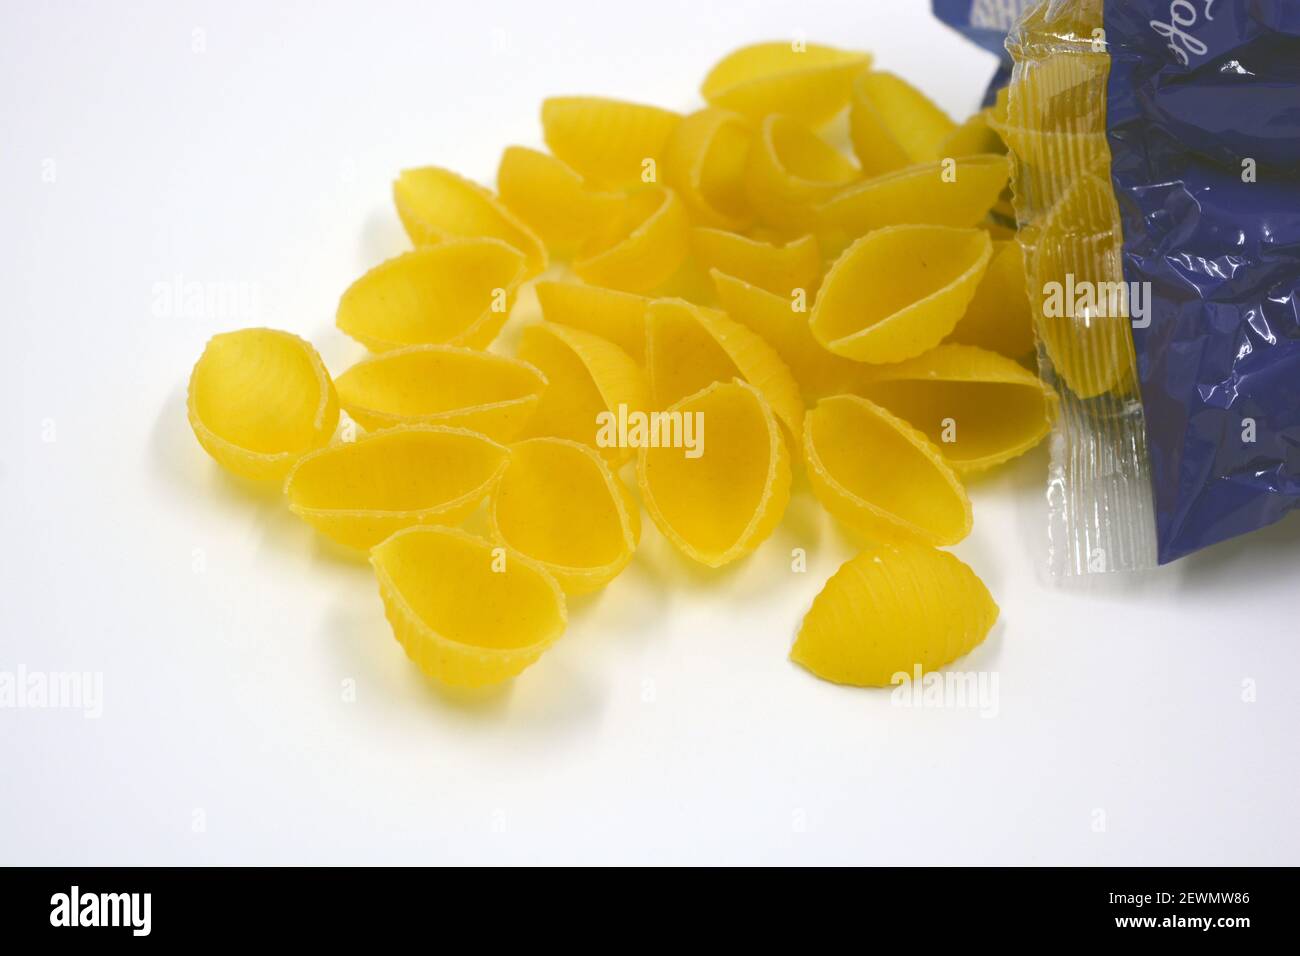 Trockene gelbe italienische Vermicelli, Pasta von Wwkushi Muschelschalen aus Vollkornsorten, befinden sich auf weißem Hintergrund. Stockfoto